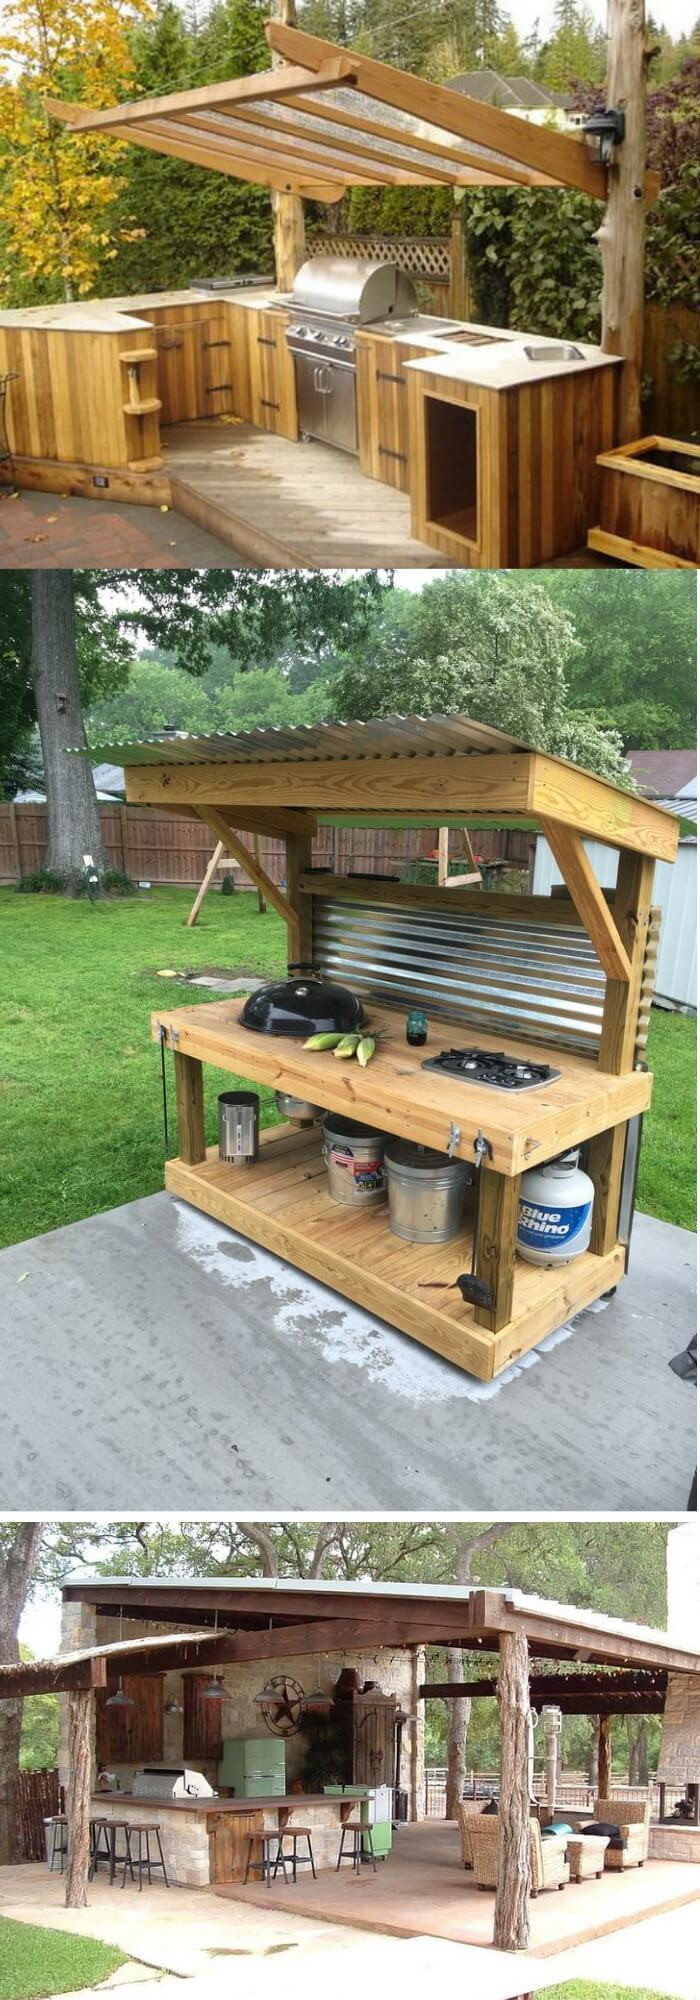 Best ideas about DIY Outdoor Kitchen Ideas
. Save or Pin 31 Stunning Outdoor Kitchen Ideas & Designs With Now.